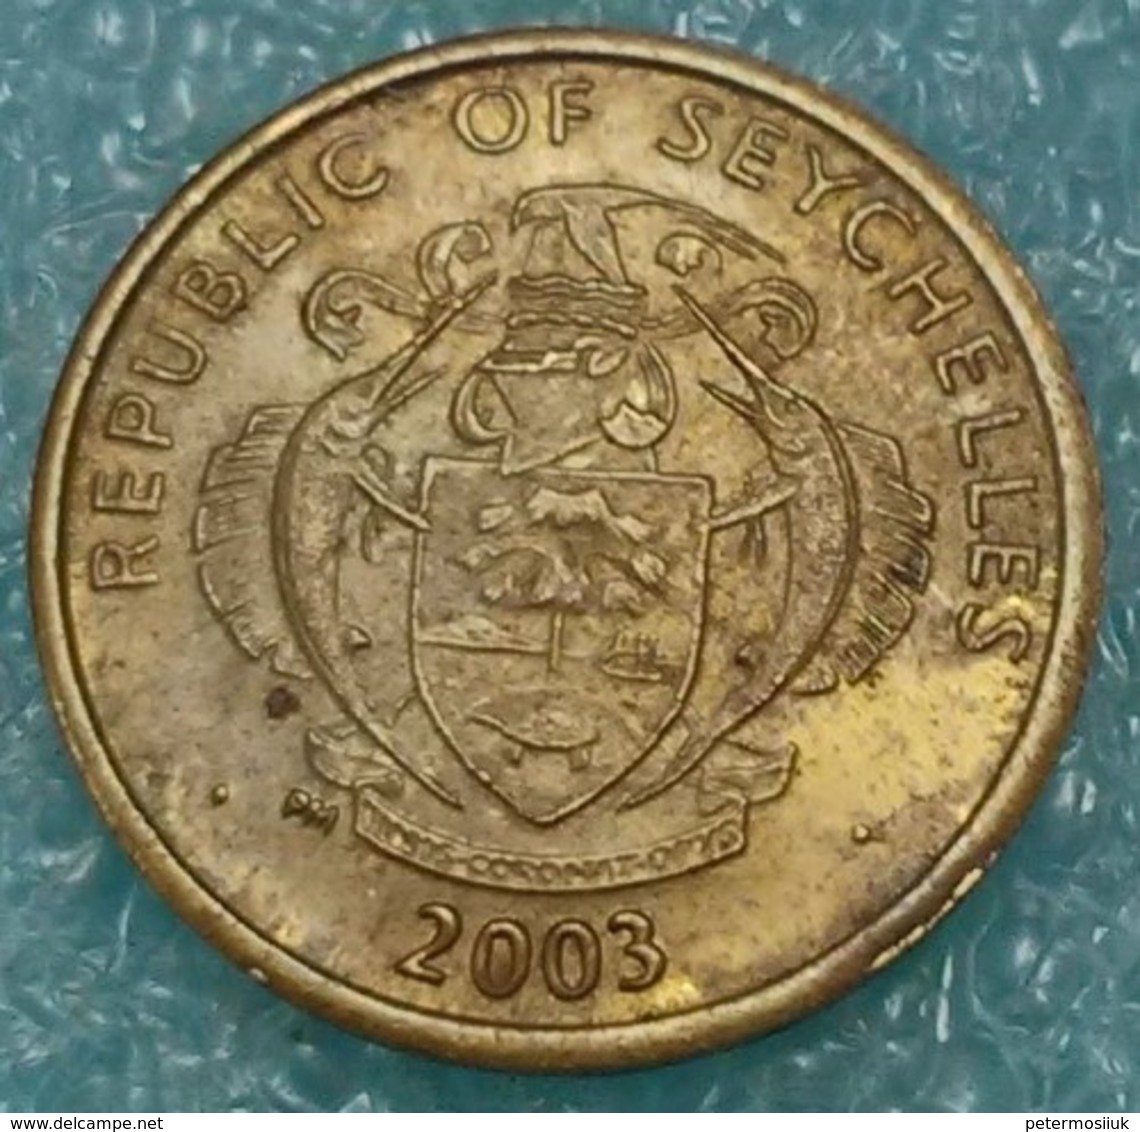 Seychelles 5 Cents, 2003 -4041 - Seychelles